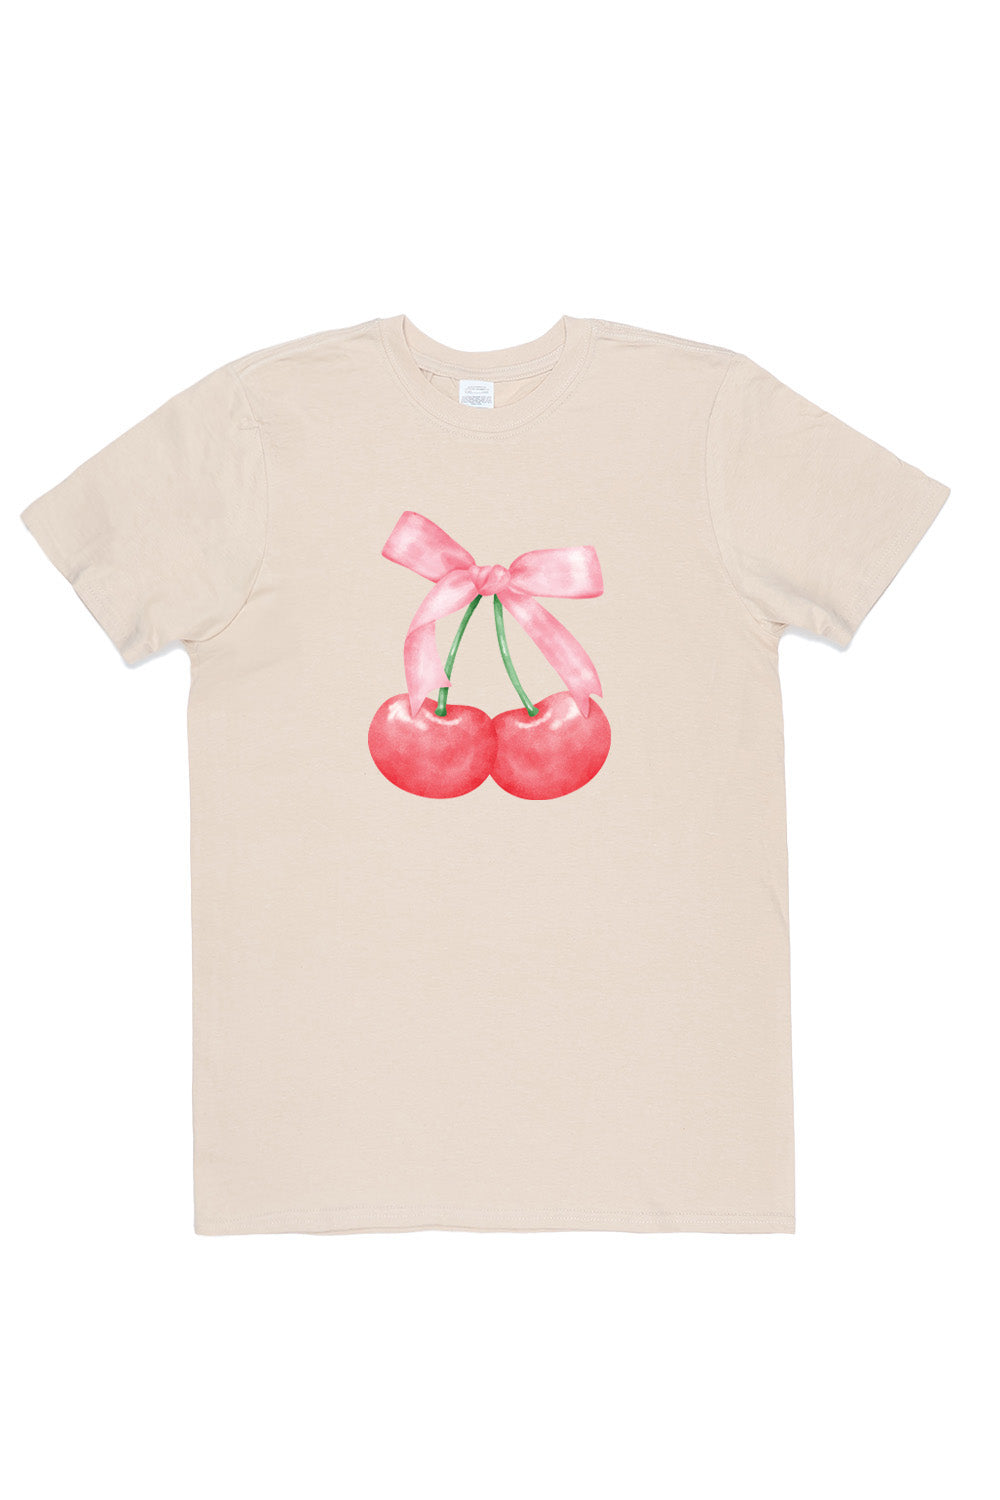 Twin Cherries T-Shirt in Sand (Custom Packs)